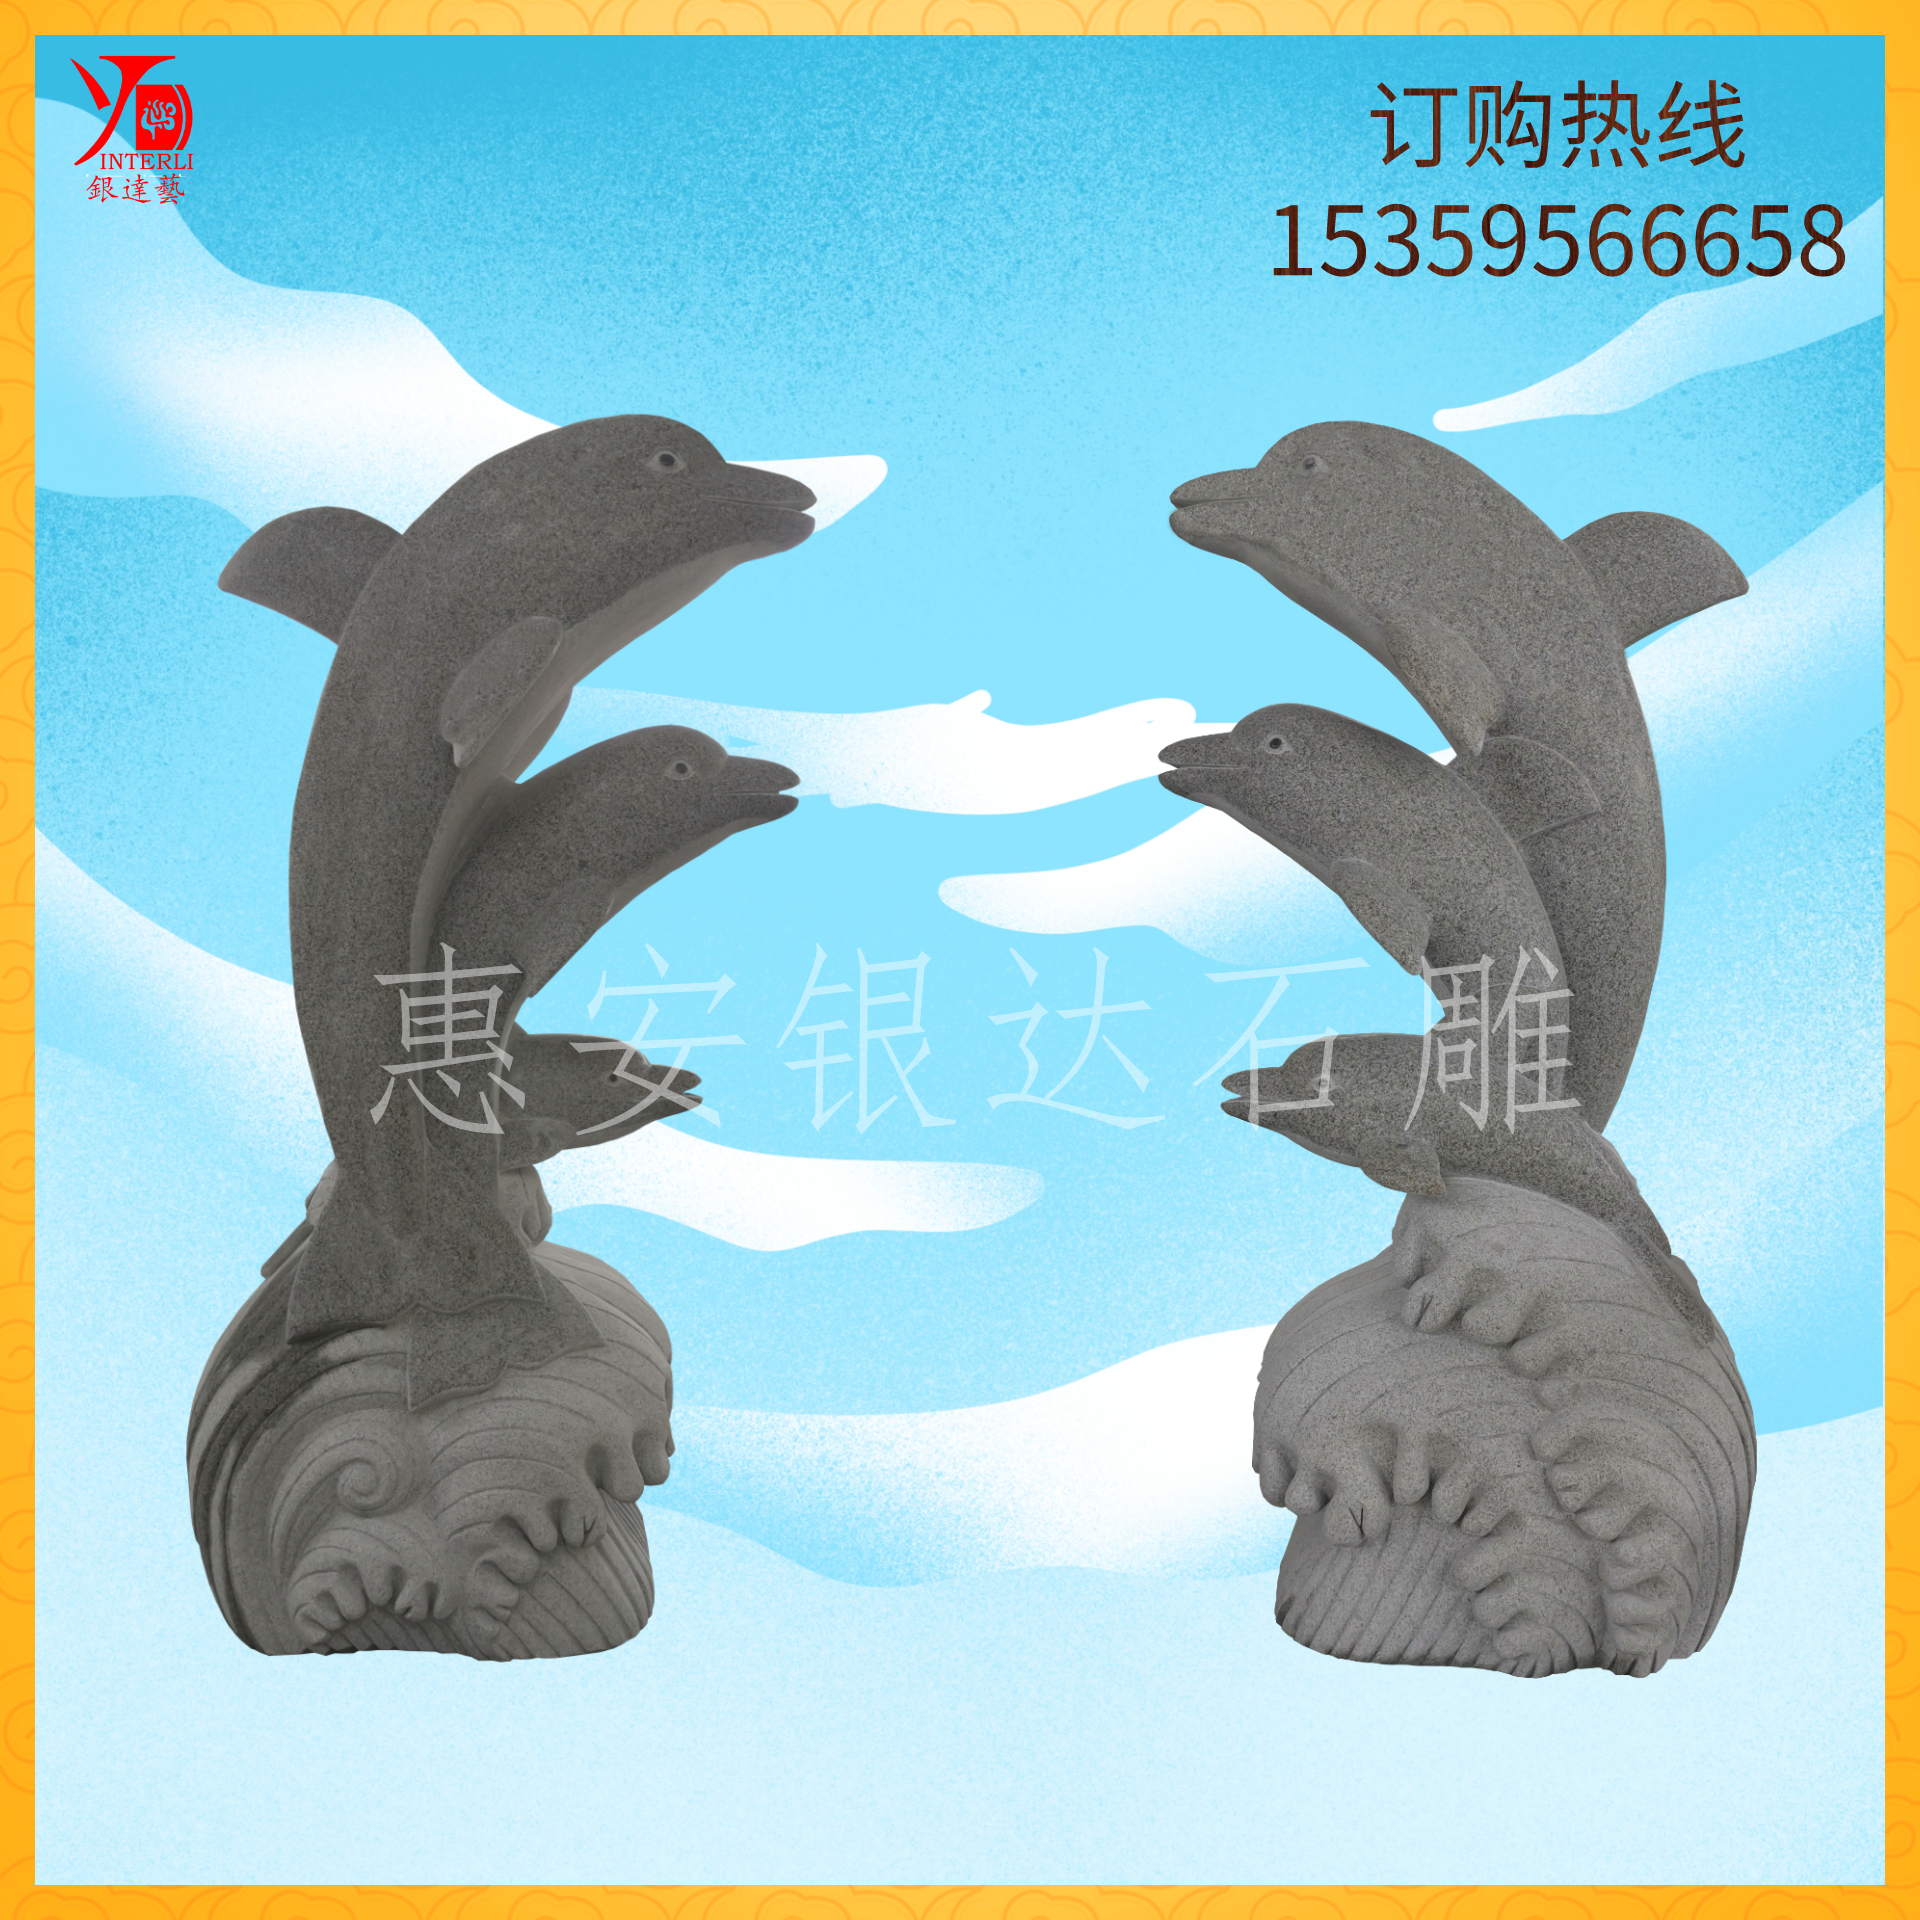 海豚吐水石雕厂家-价格-供应商 海豚吐水雕塑厂家-价格-供应商图片